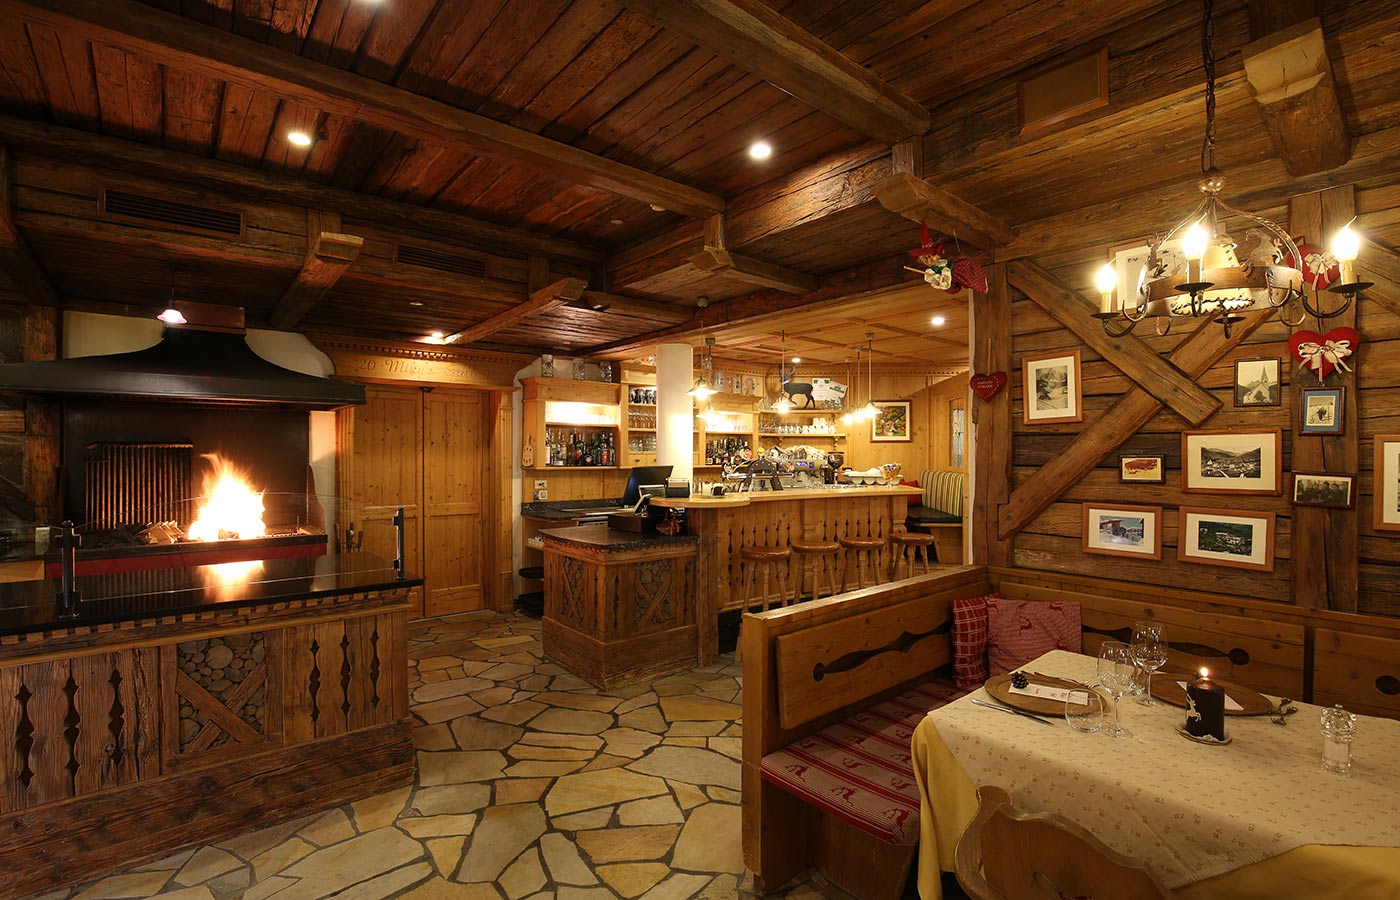 Interno del ristorante Miky's Grill, interamente arredato in legno con forno acceso